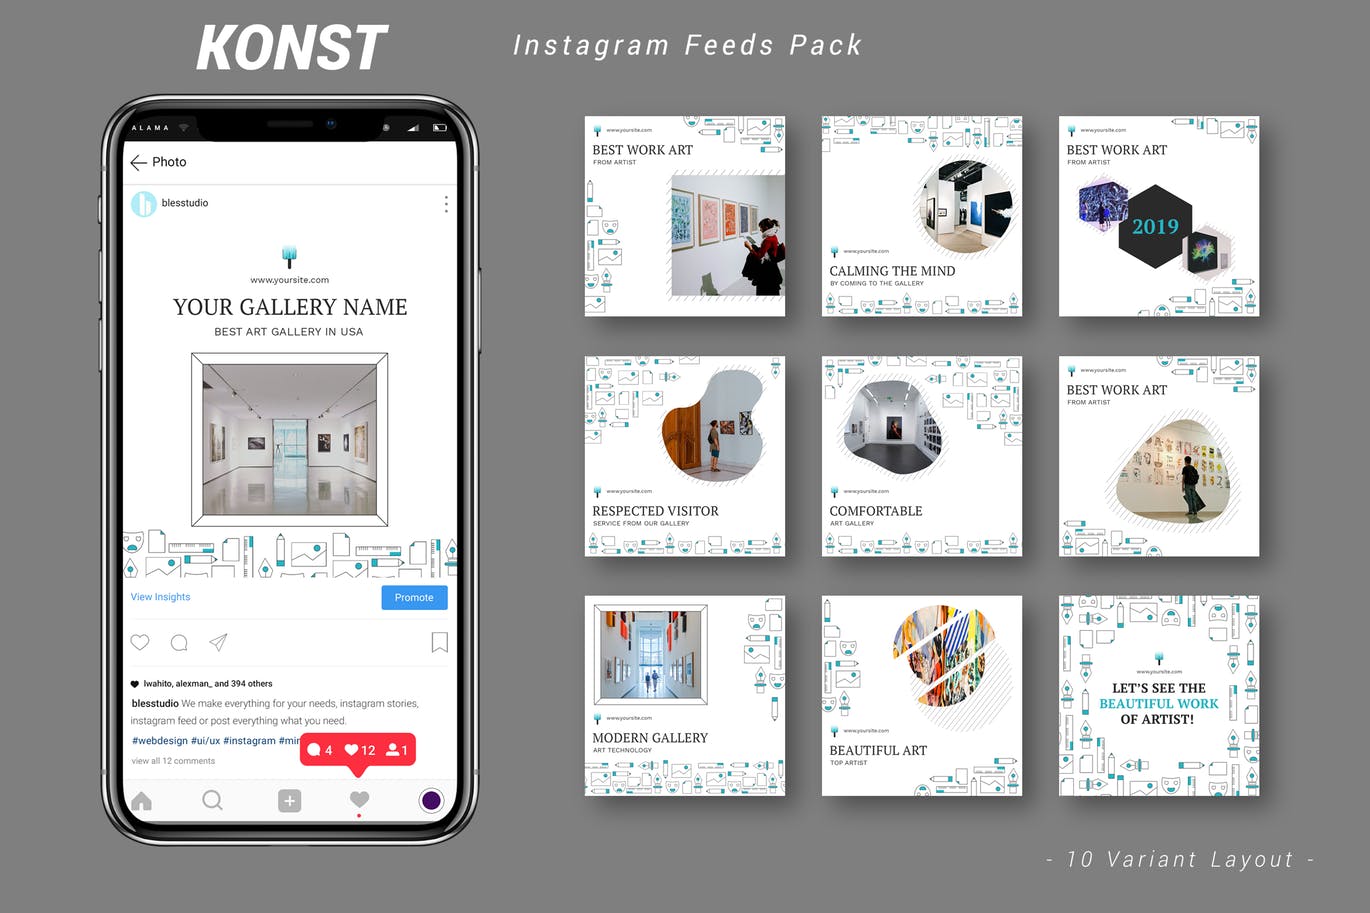 创意艺术展览主题Instagram信息流广告设计模板非凡图库精选 Konst – Instagram Feeds Pack插图